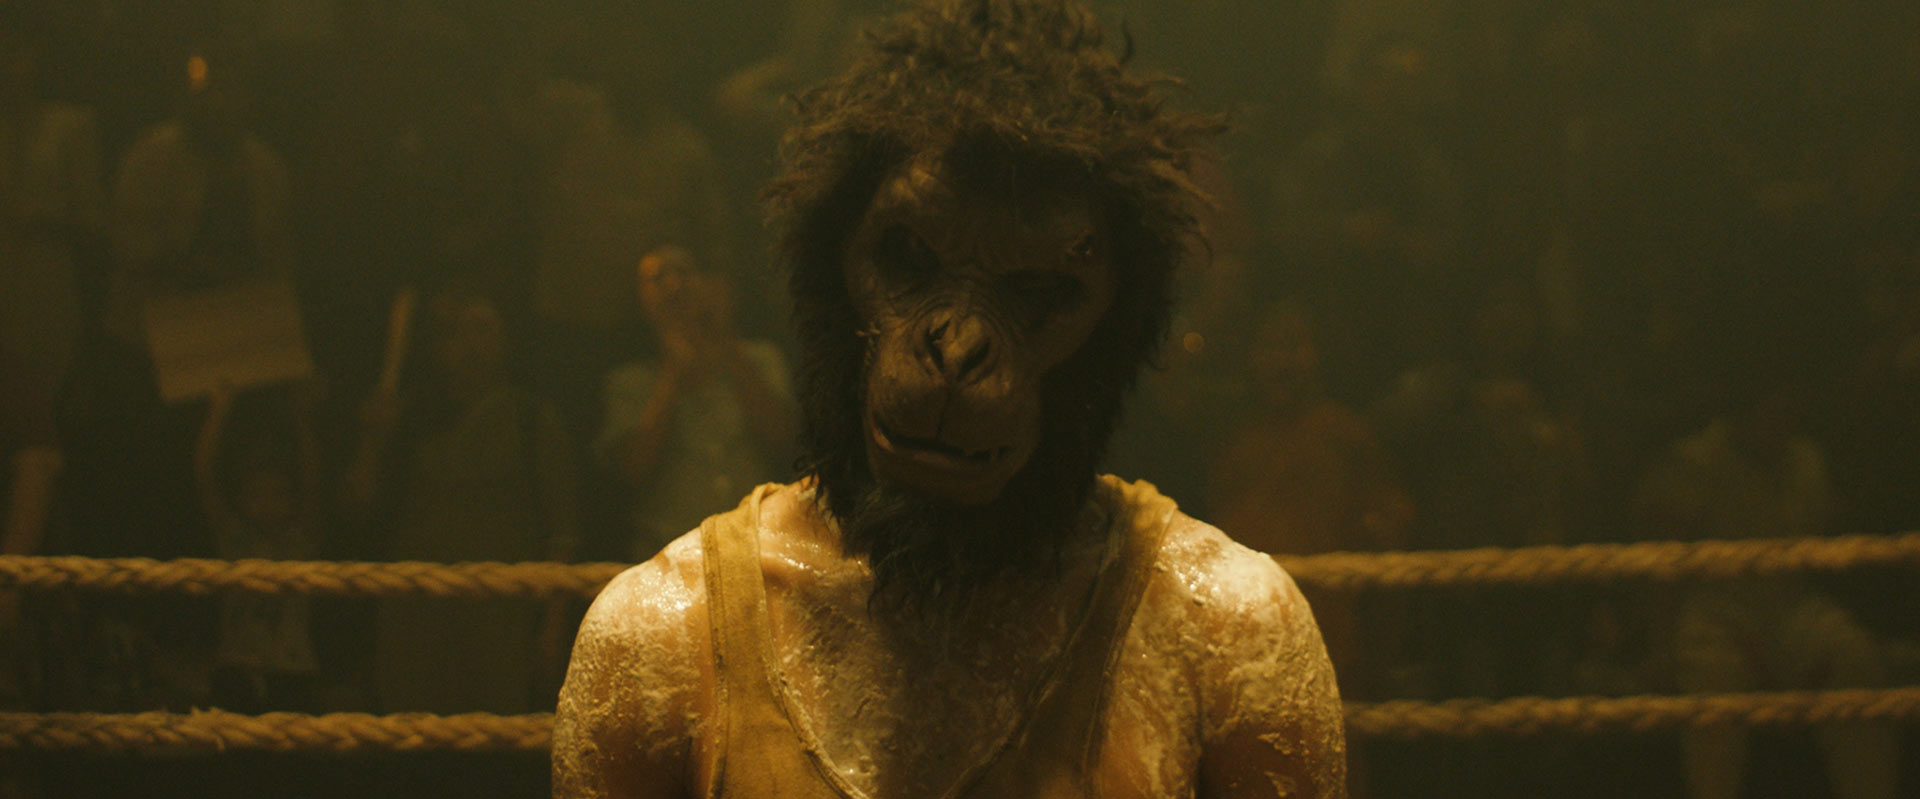 Monkey Man - 4K Ultra HD + Blu-ray (Blu-ray) Image 7